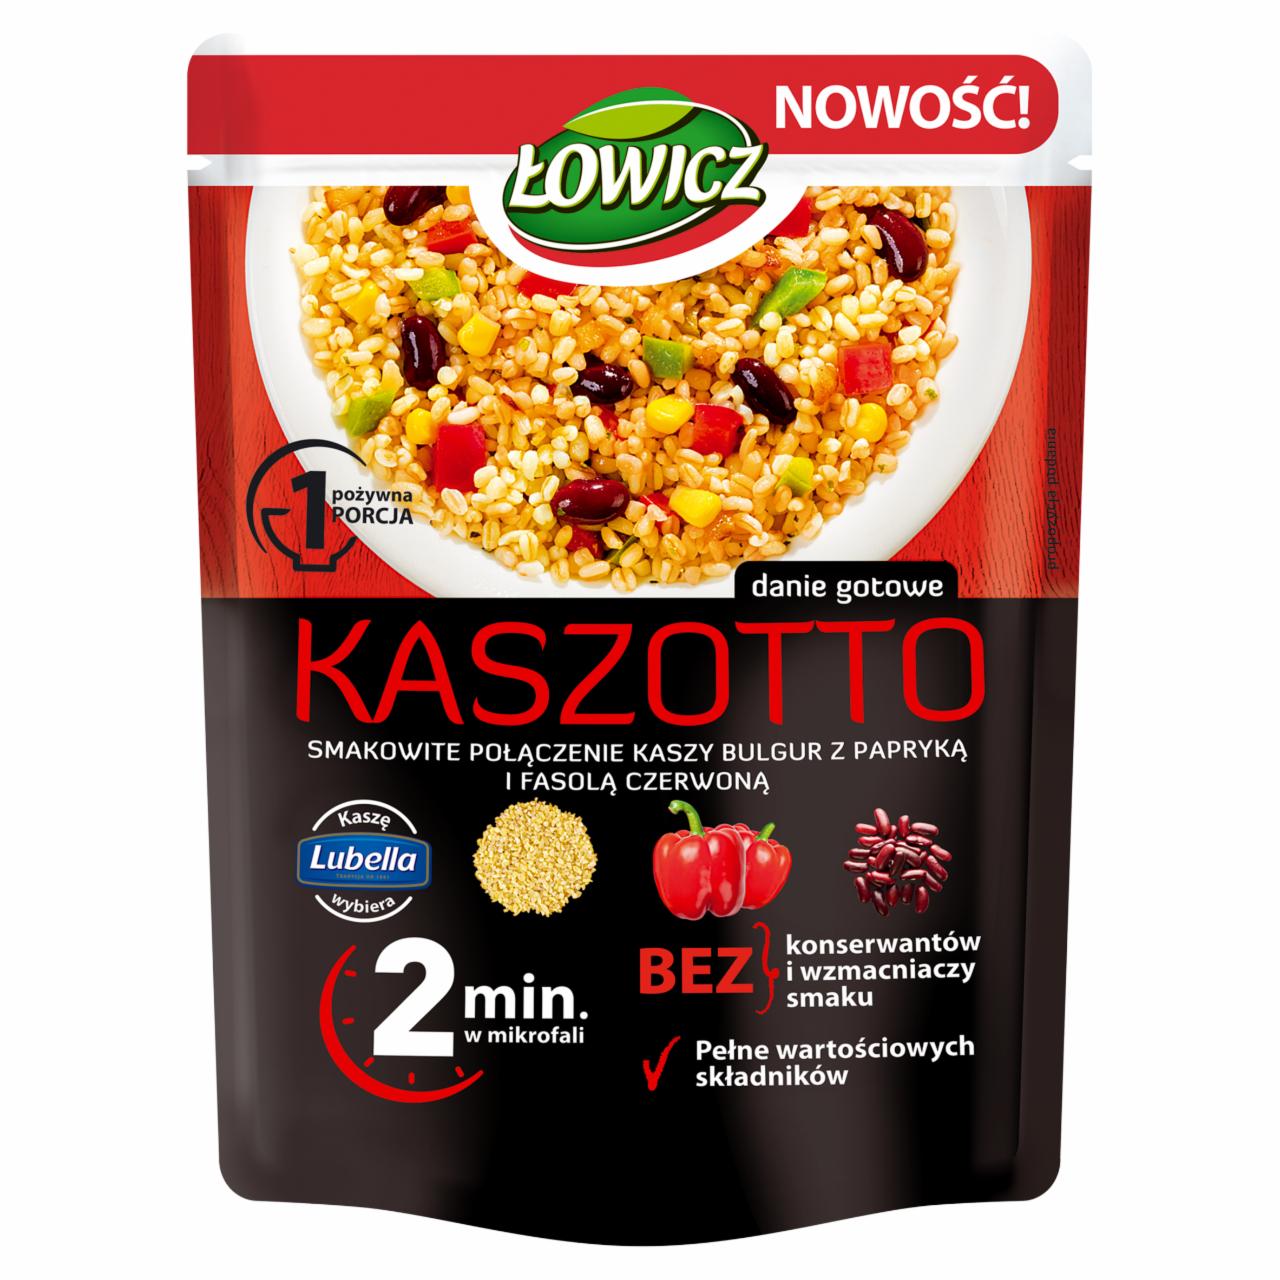 Zdjęcia - Łowicz Kaszotto kasza bulgur z fasolą i papryką 250 g